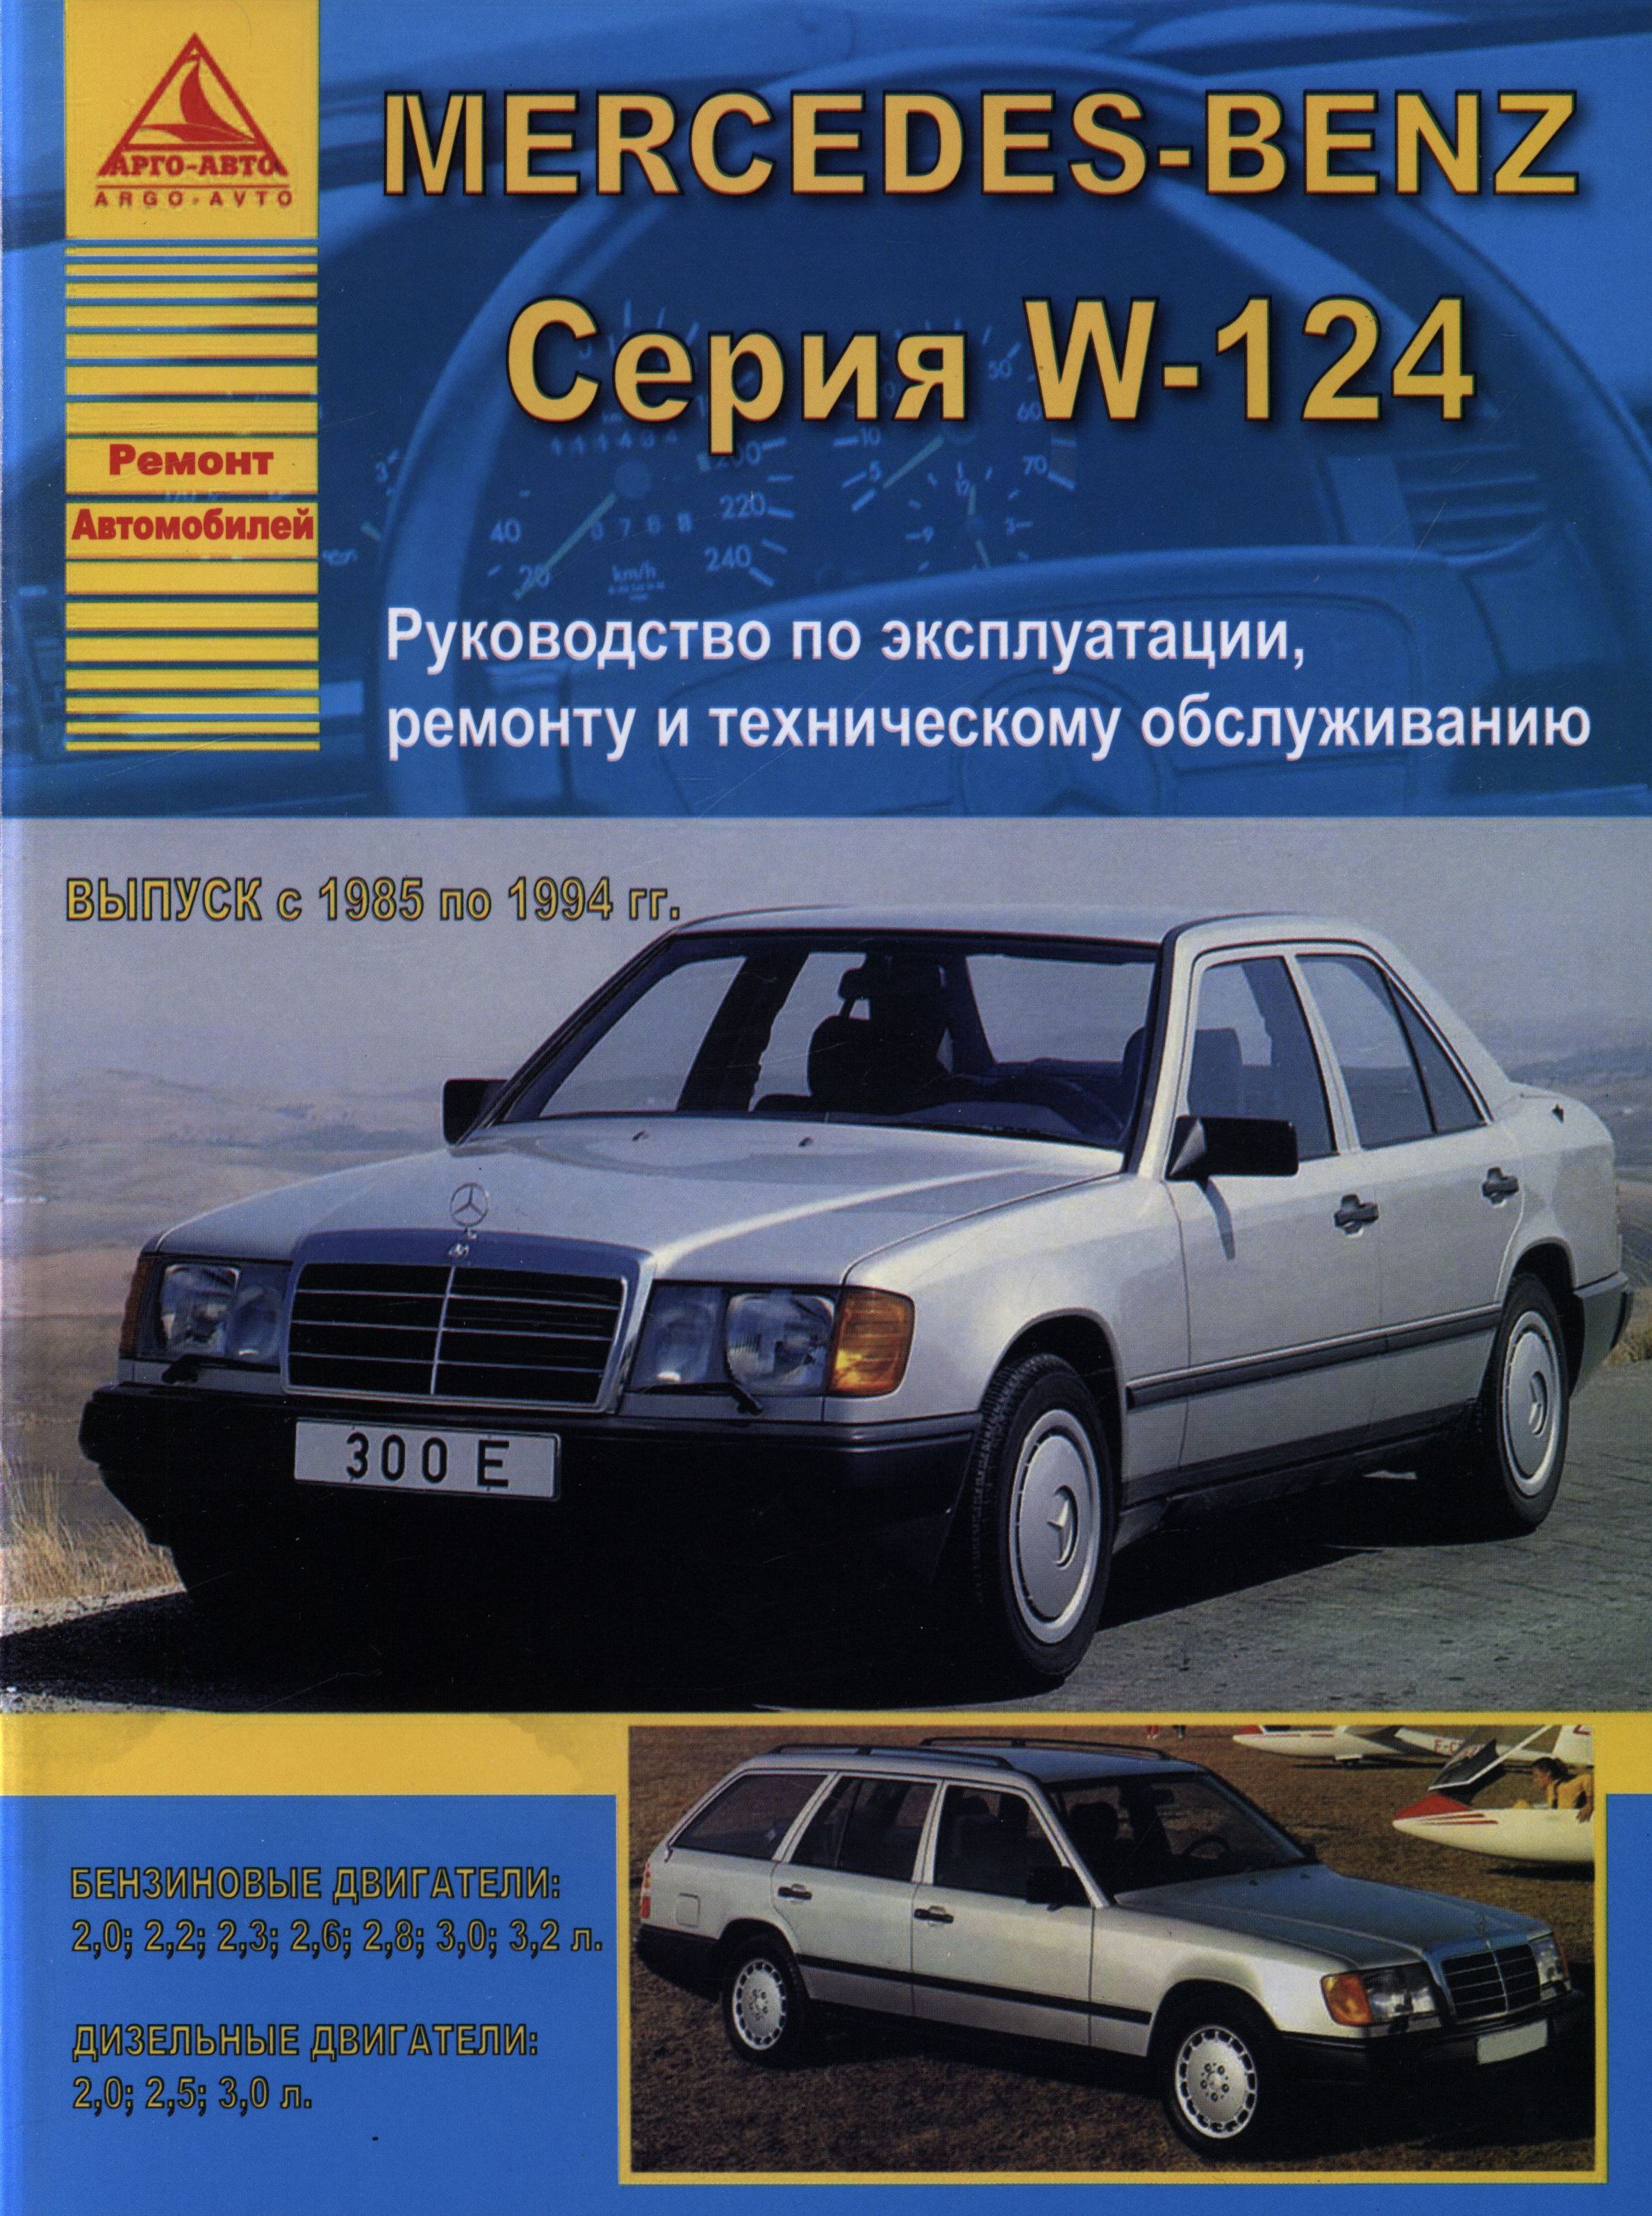 MERCEDES-BENZ W-124 серии 1985-1994 бензин / дизель Пособие по ремонту и эксплуатации